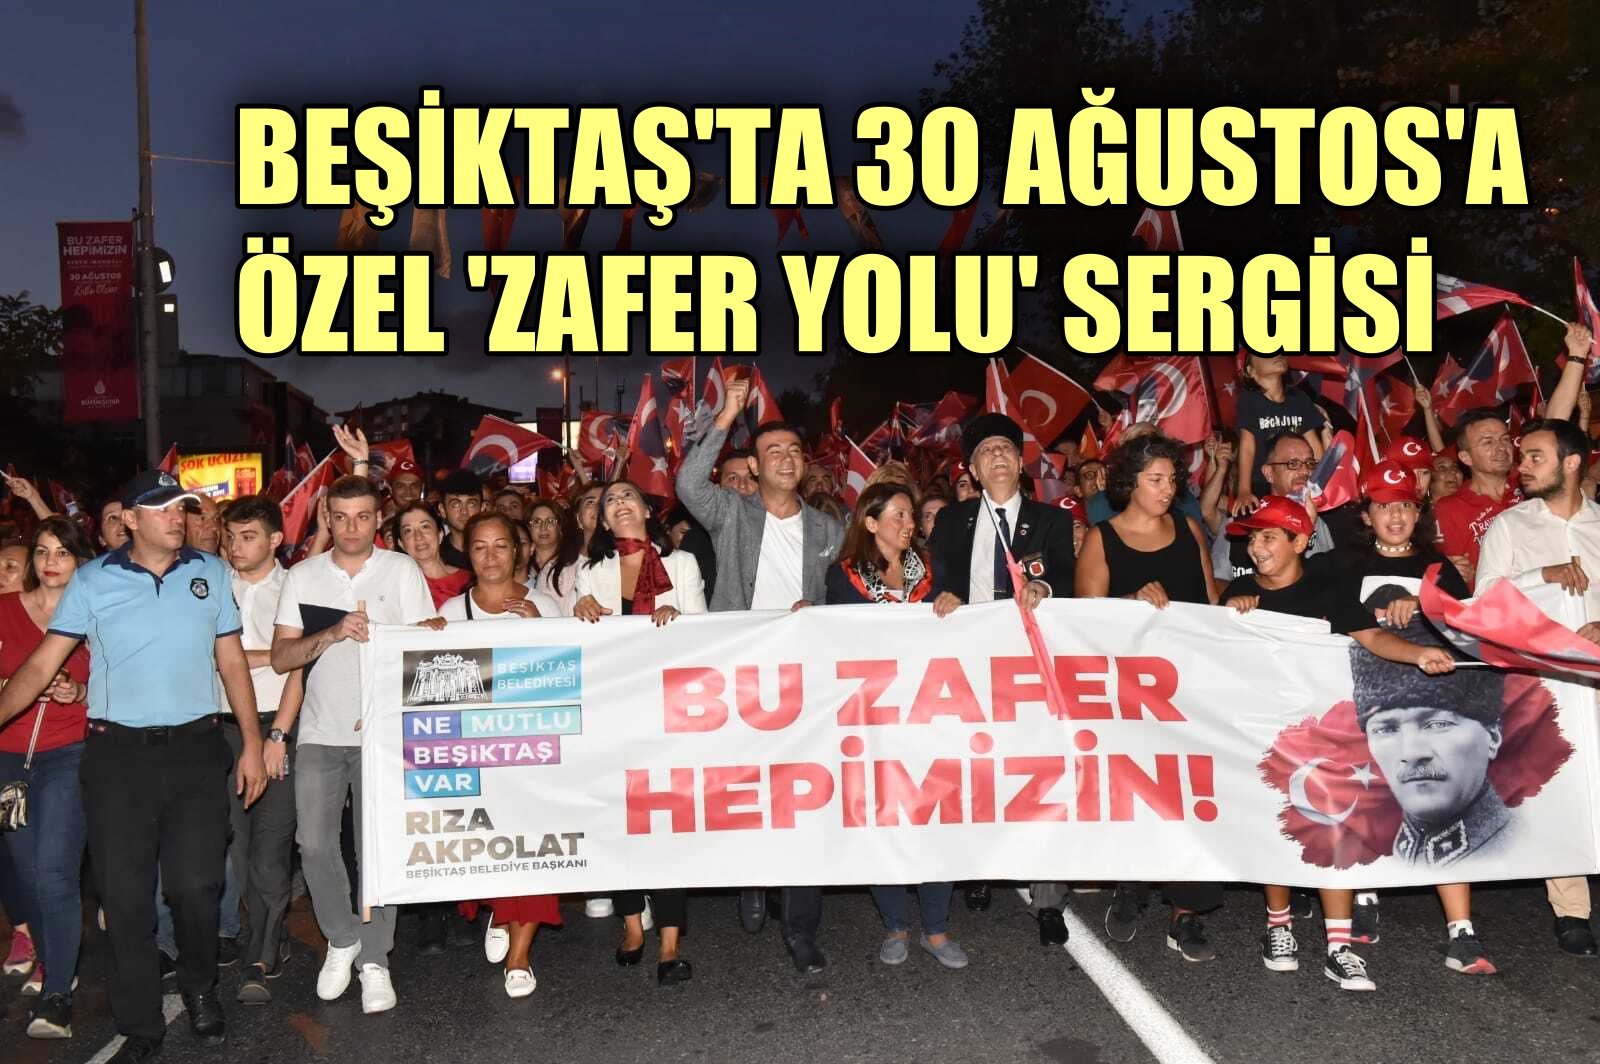 Beşiktaş'ta 30 Ağustos'a özel 'Zafer Yolu' sergisi düzenlenecek